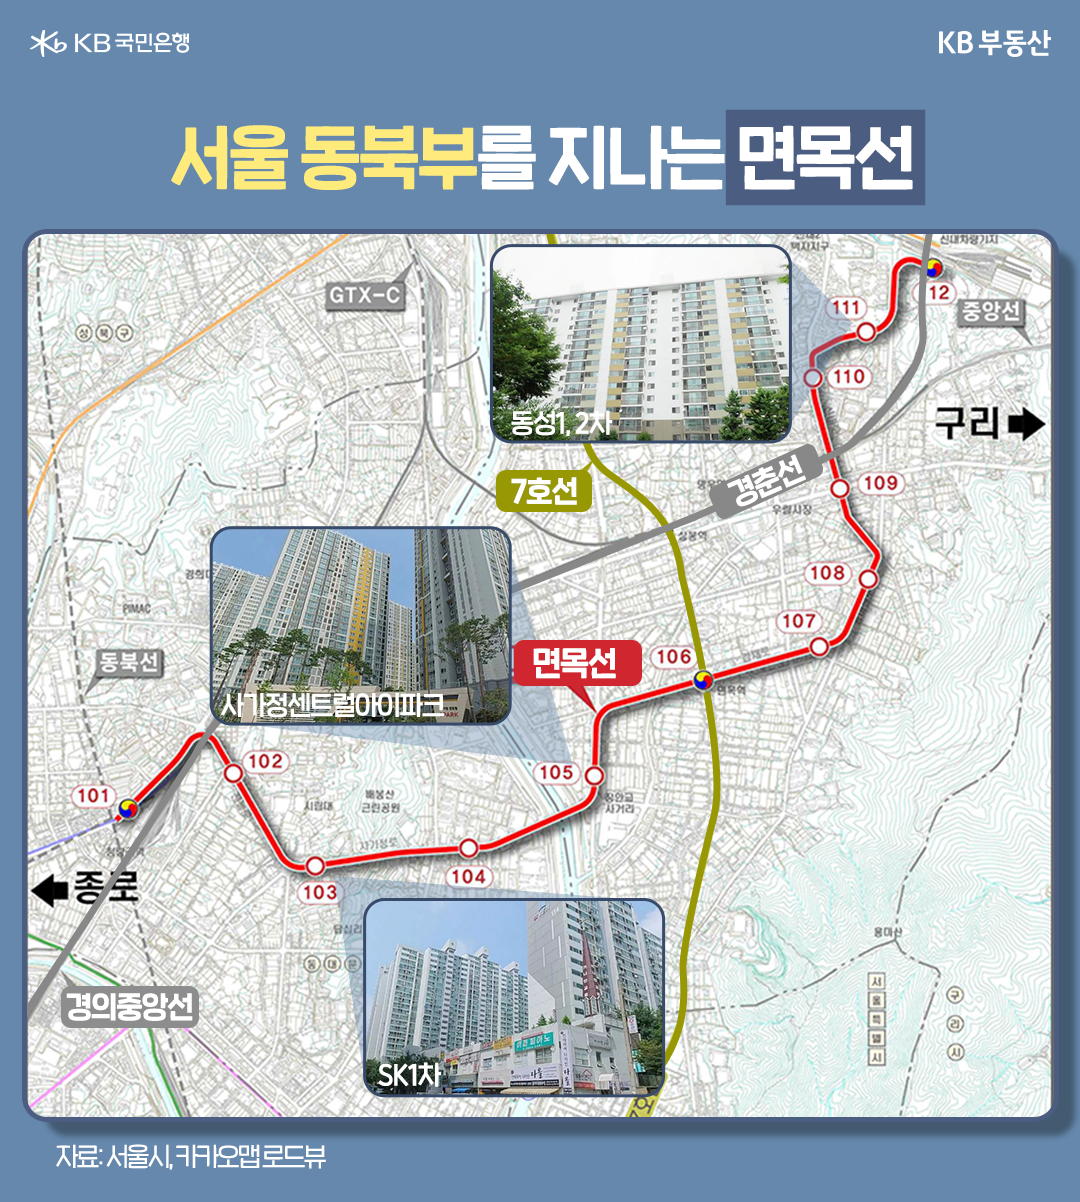 '서울 동북부'를 지나는 '면목선'의 노선과 그 주변에 위치한 아파트 단지 몇개의 로드뷰를 보여주고 있다. '사가정센트럴아이파크', '동성1, 2차', 'SK1차'가 있다.